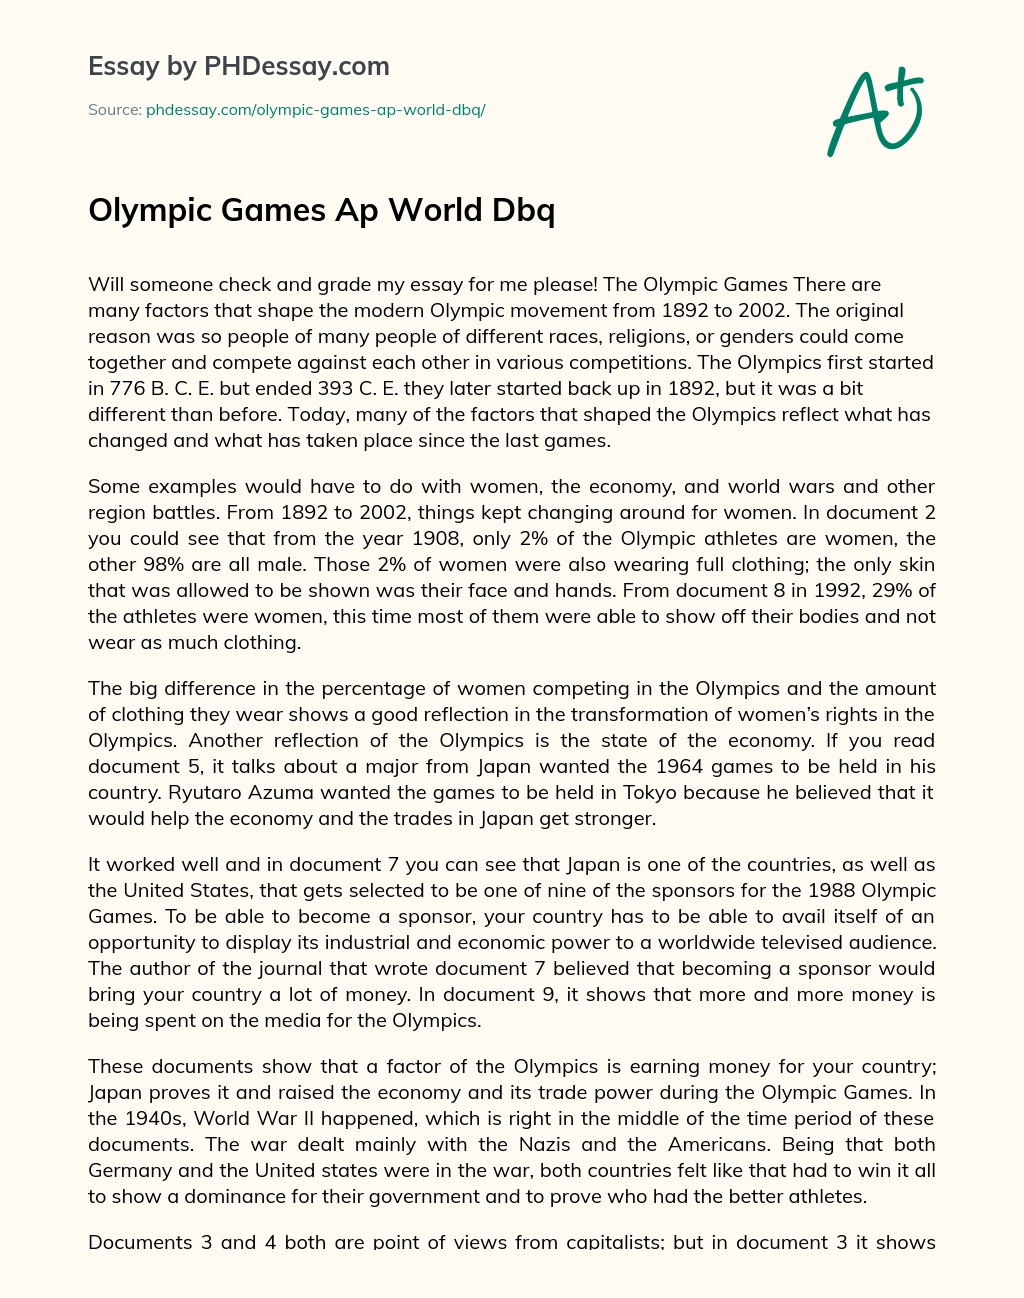 Olympic Games Ap World Dbq essay